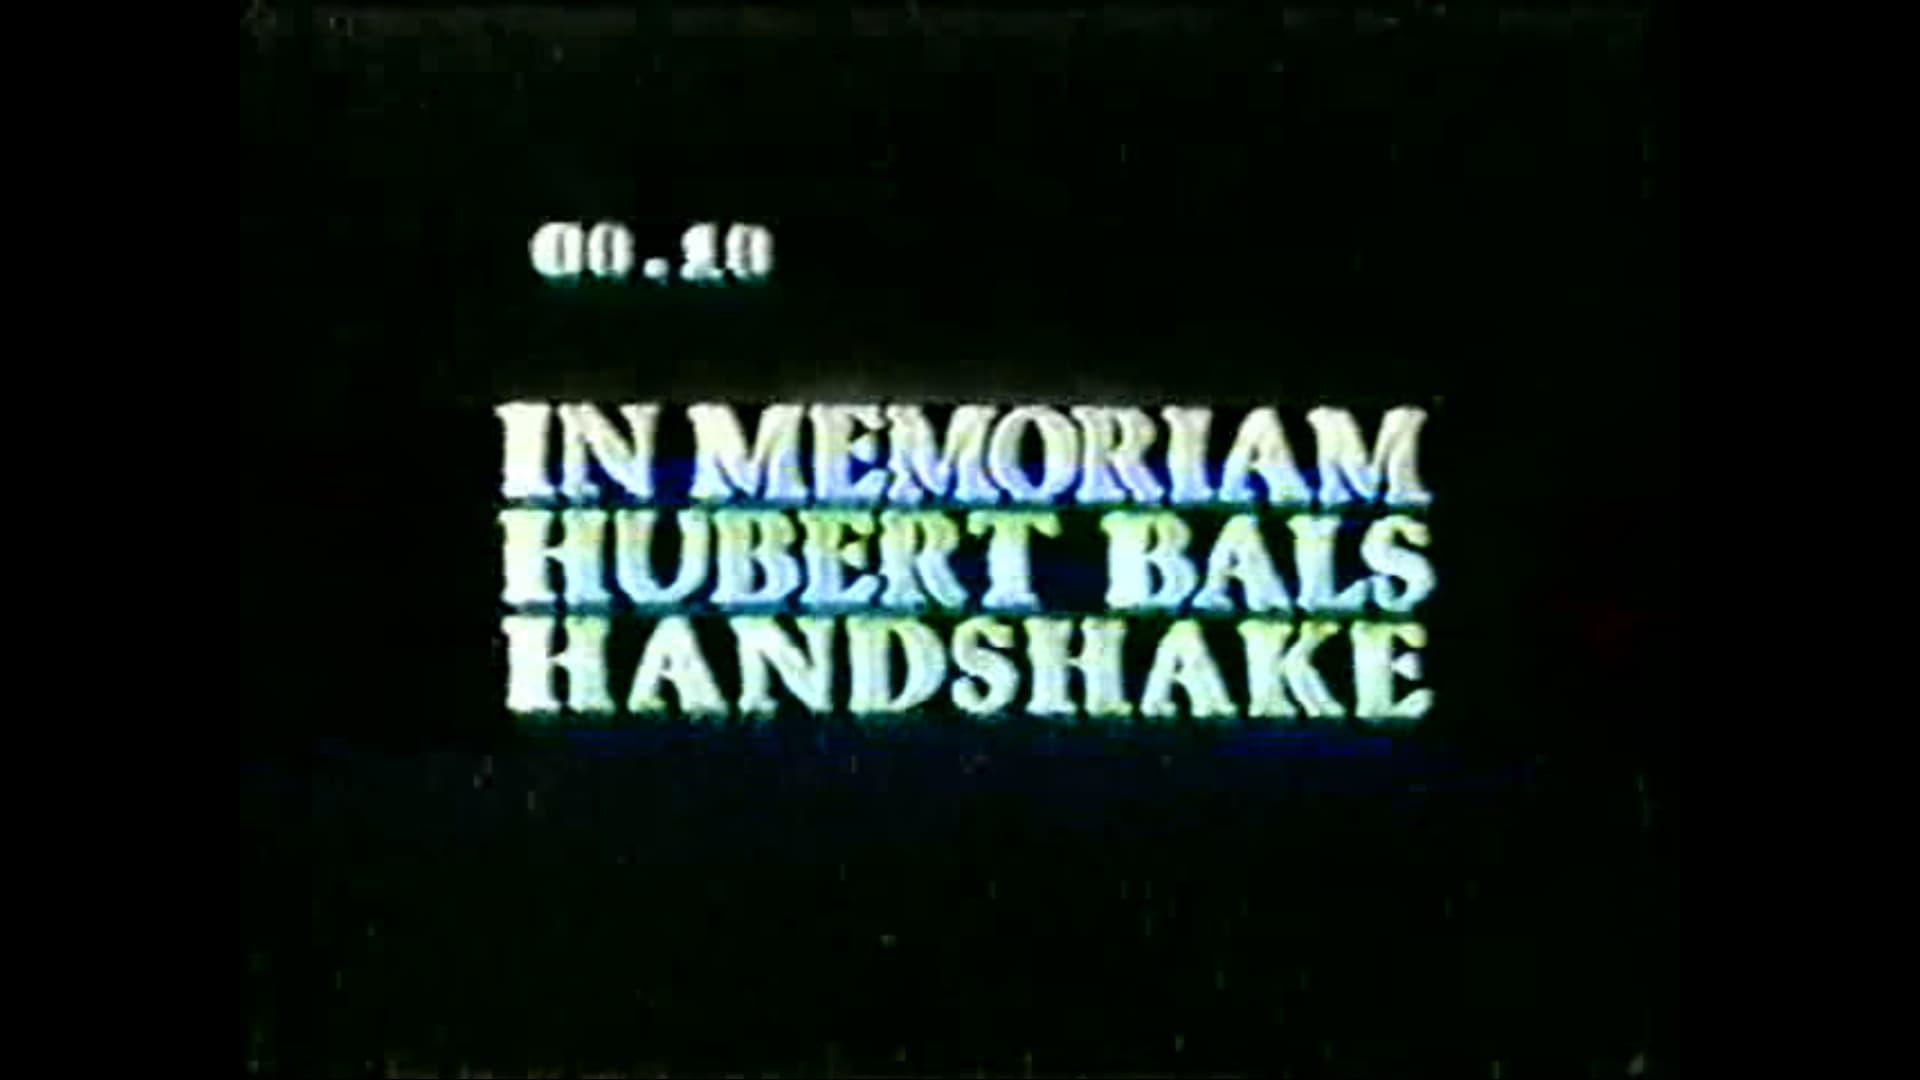 Hubert Bals Handshake backdrop